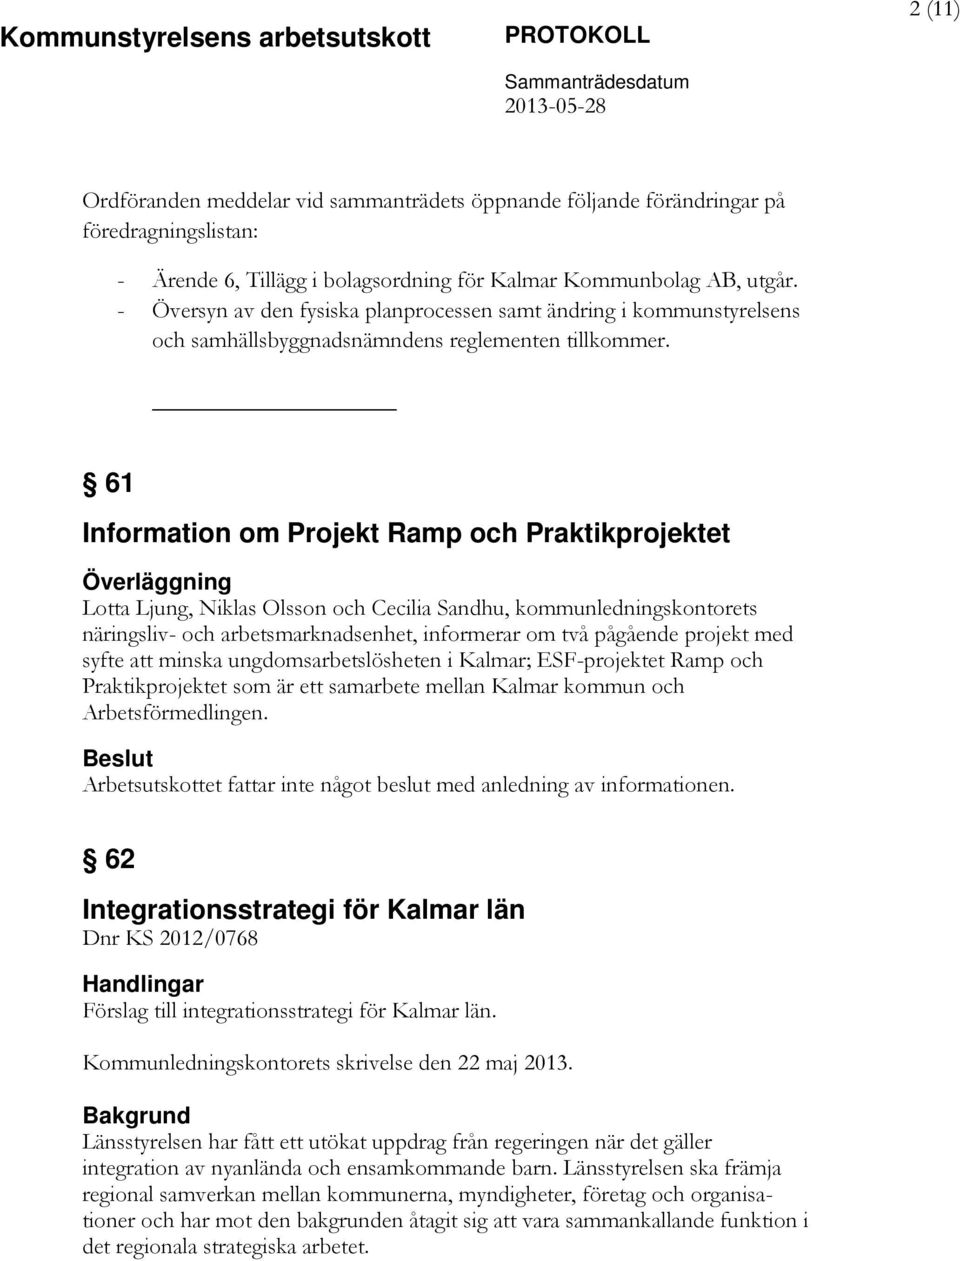 61 Information om Projekt Ramp och Praktikprojektet Lotta Ljung, Niklas Olsson och Cecilia Sandhu, kommunledningskontorets näringsliv- och arbetsmarknadsenhet, informerar om två pågående projekt med